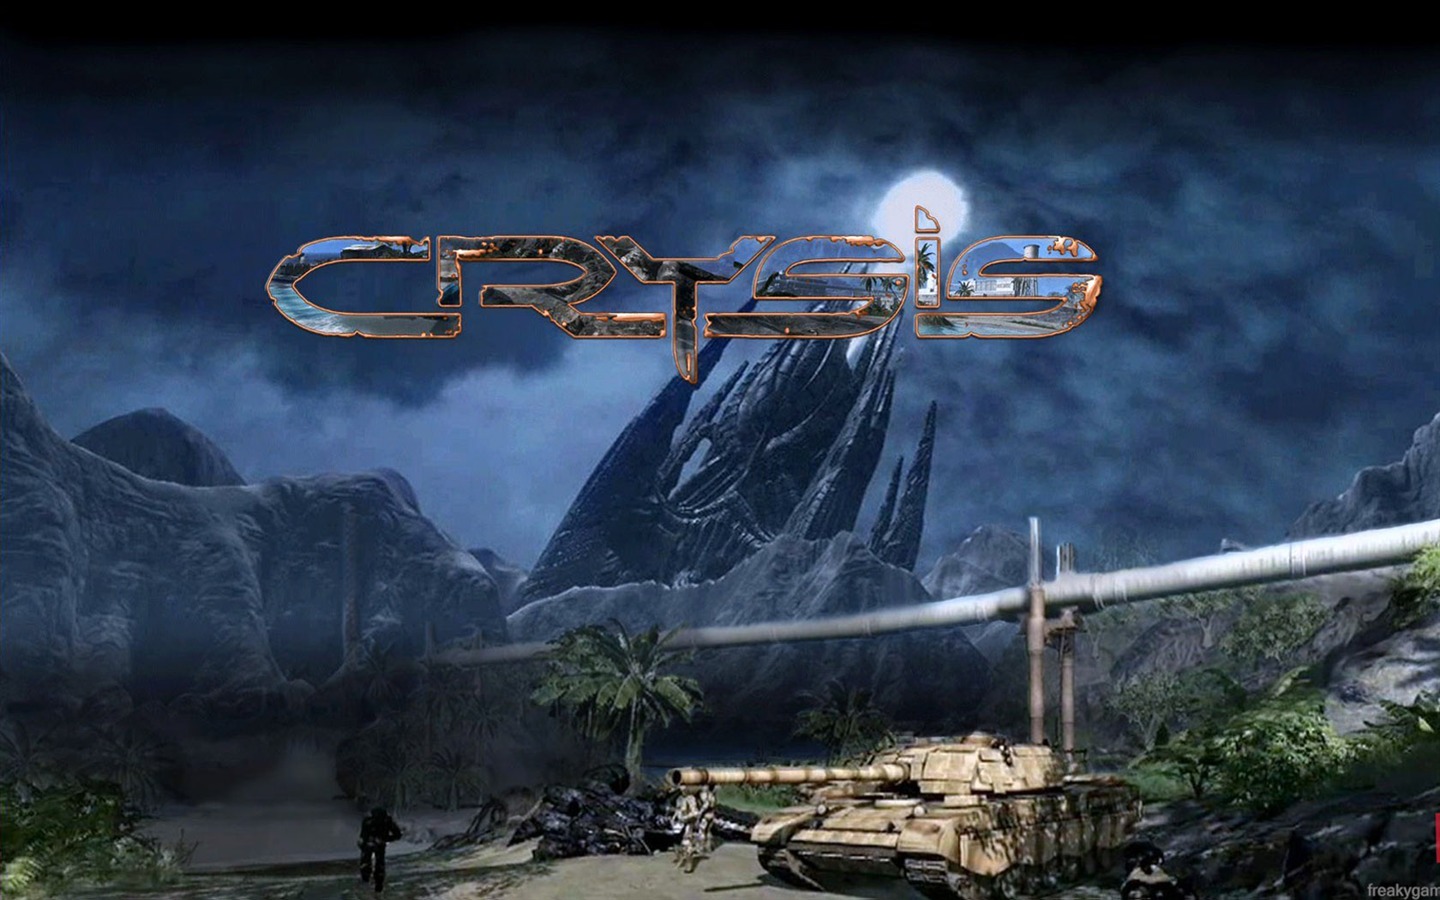  Crysisの壁紙(3) #11 - 1440x900